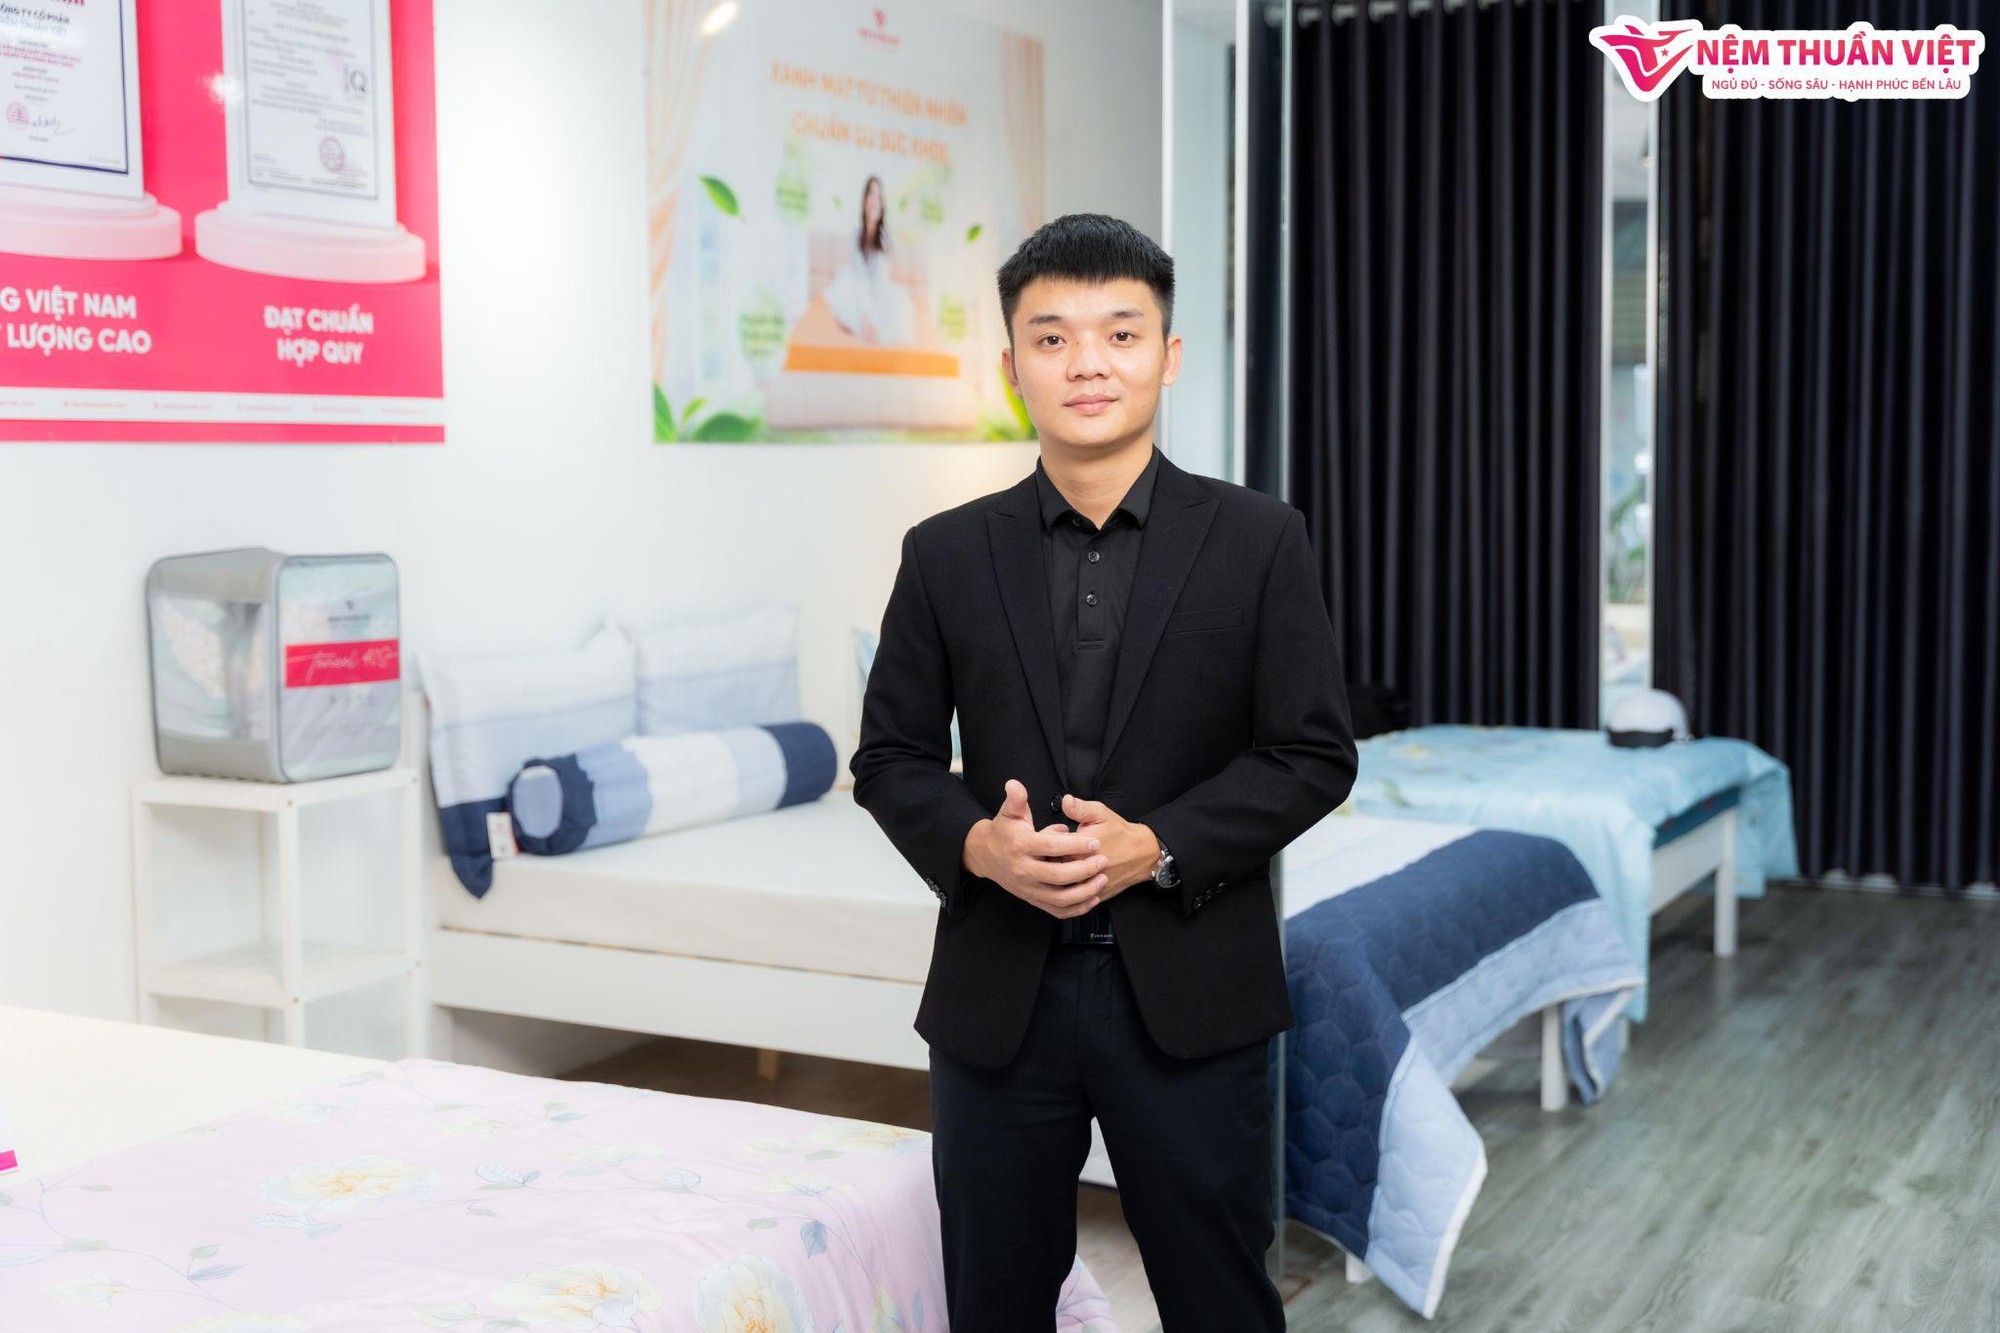 Nệm Thuần Việt sở hữu ban lãnh đạo đầy tài năng với CEO chỉ mới 26 tuổi - Ảnh 1.